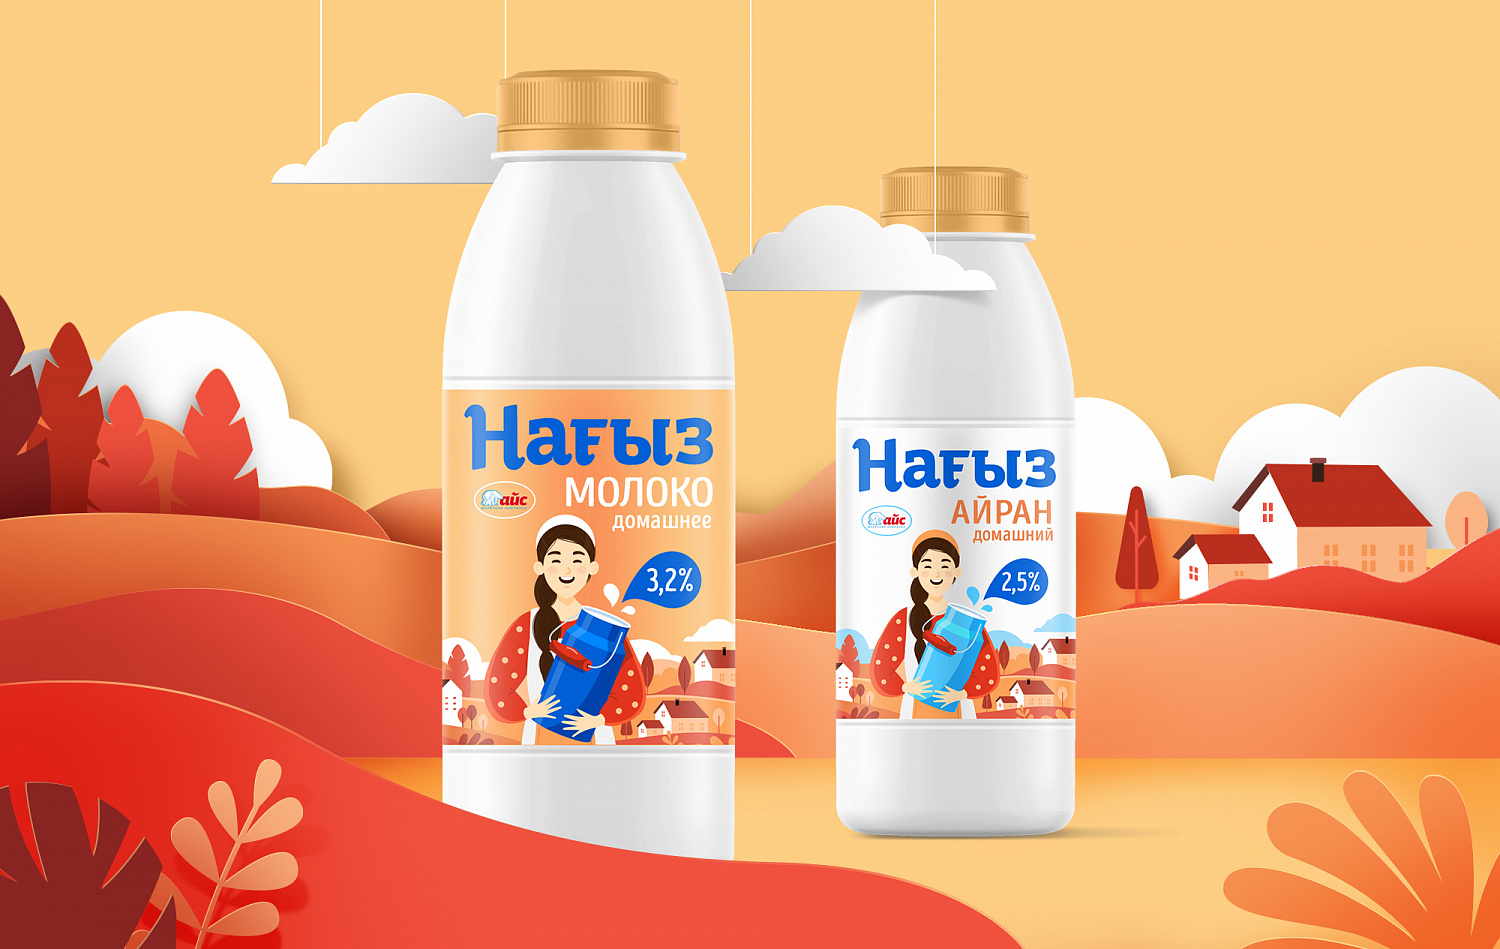 Нагыз: редизайн упаковки молочных продуктов казахского бренда - Портфолио Depot